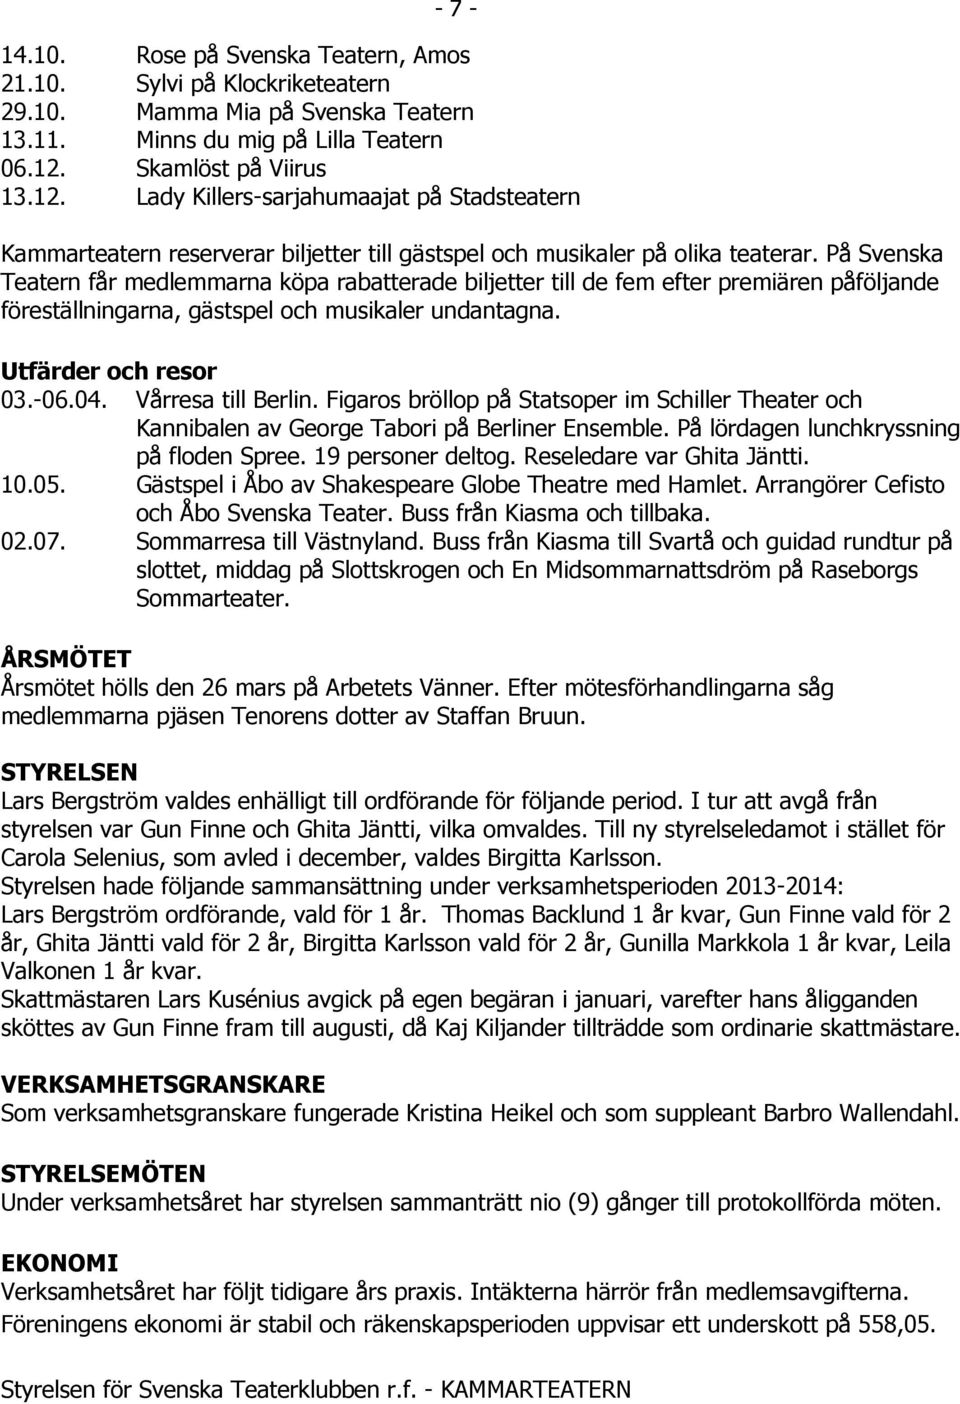 På Svenska Teatern får medlemmarna köpa rabatterade biljetter till de fem efter premiären påföljande föreställningarna, gästspel och musikaler undantagna. Utfärder och resor 03.-06.04.